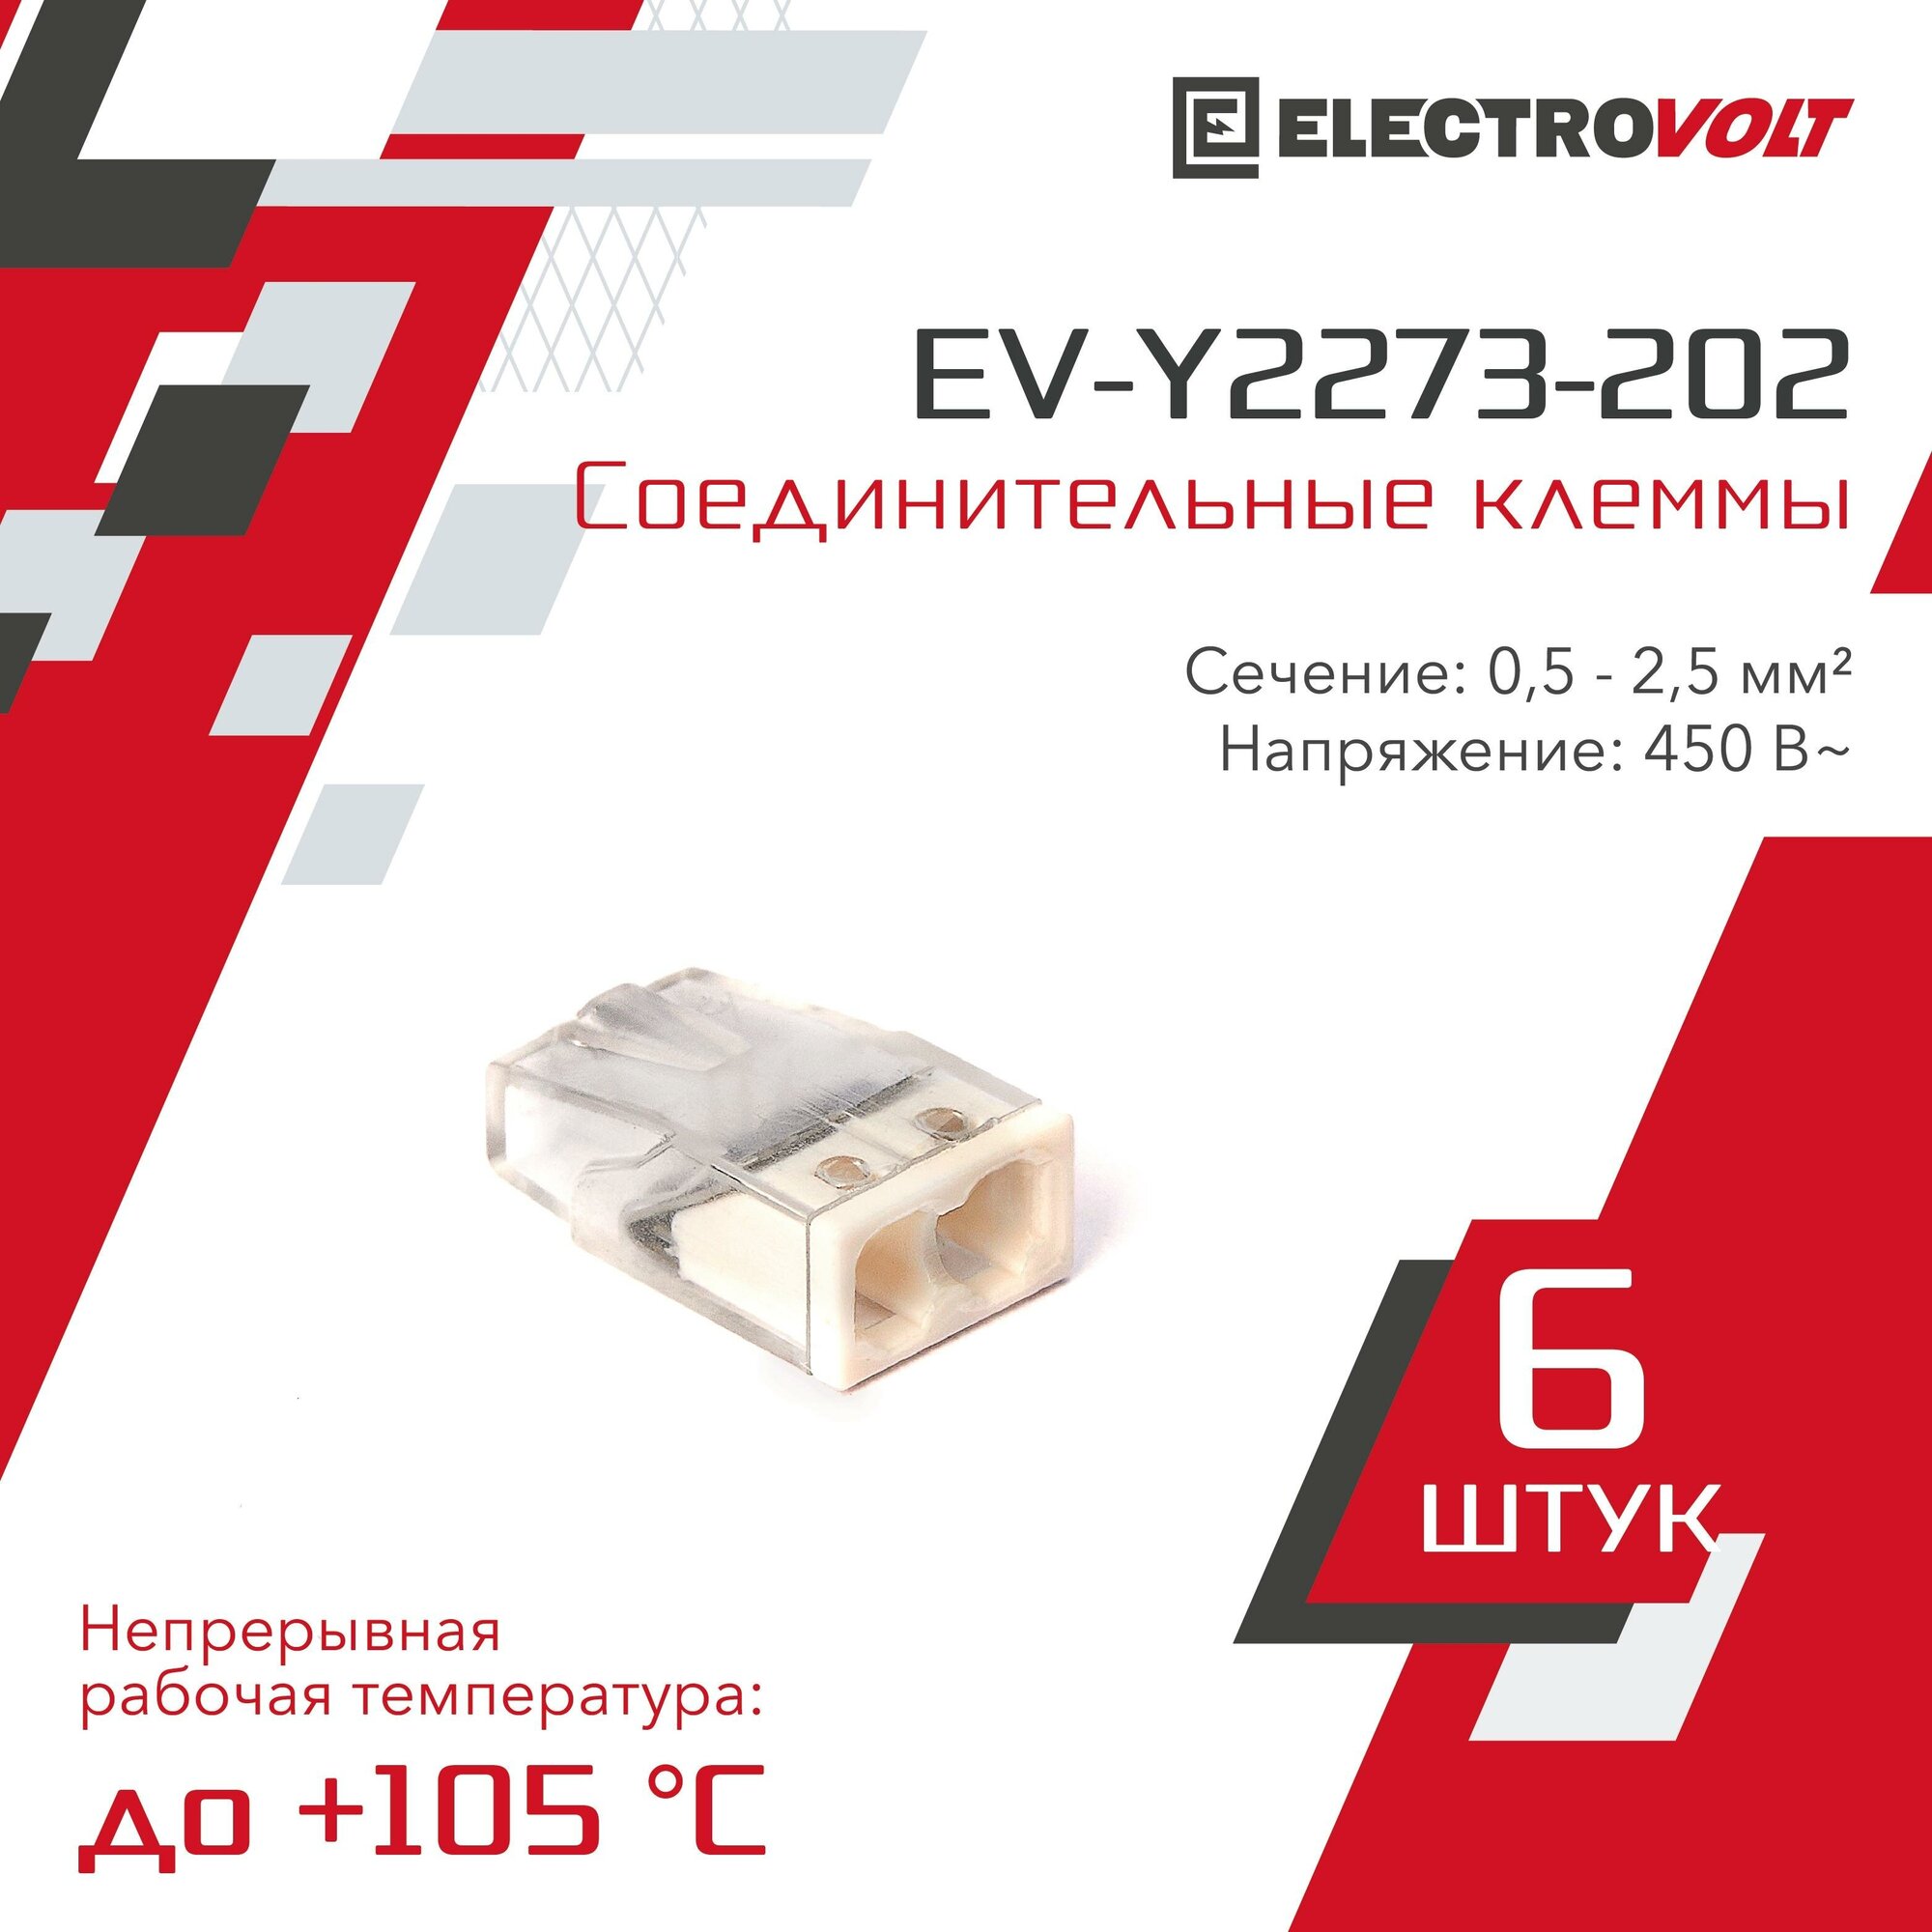 Компактная 2-проводная клемма ELECTROVOLT (EV-Y2273-202) 6 шт/уп